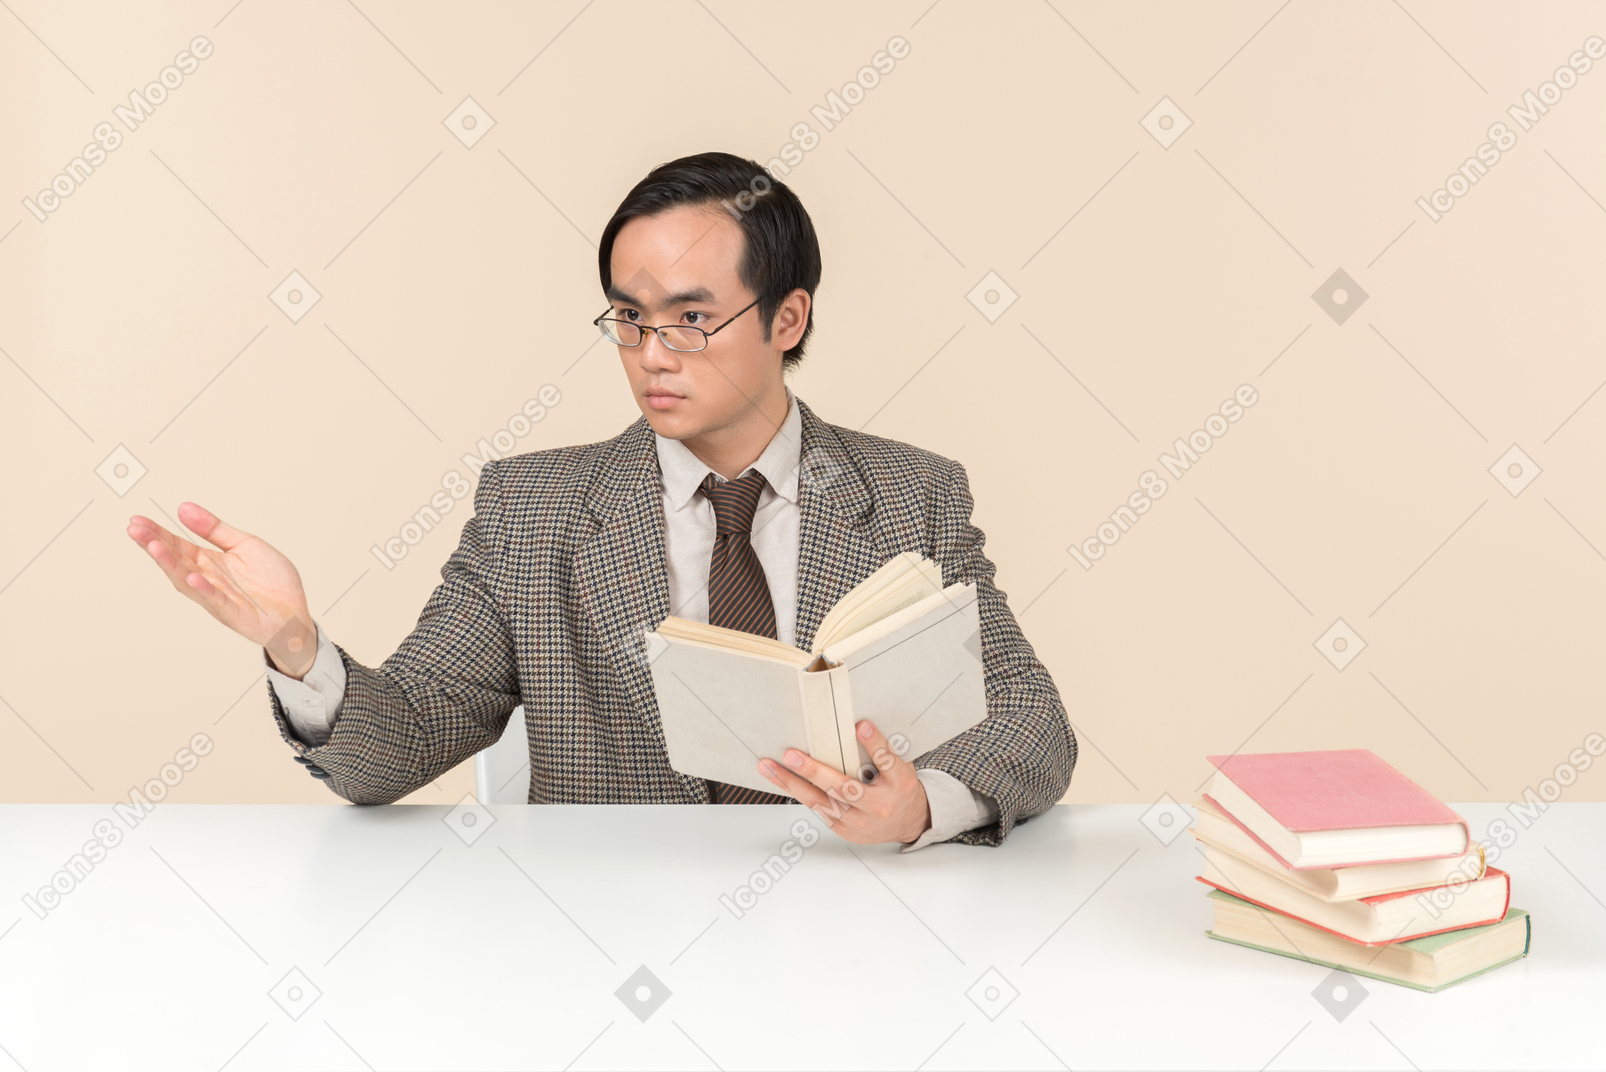 Un enseignant asiatique en costume à carreaux, une cravate et un livre à la main, travaillant avec la classe